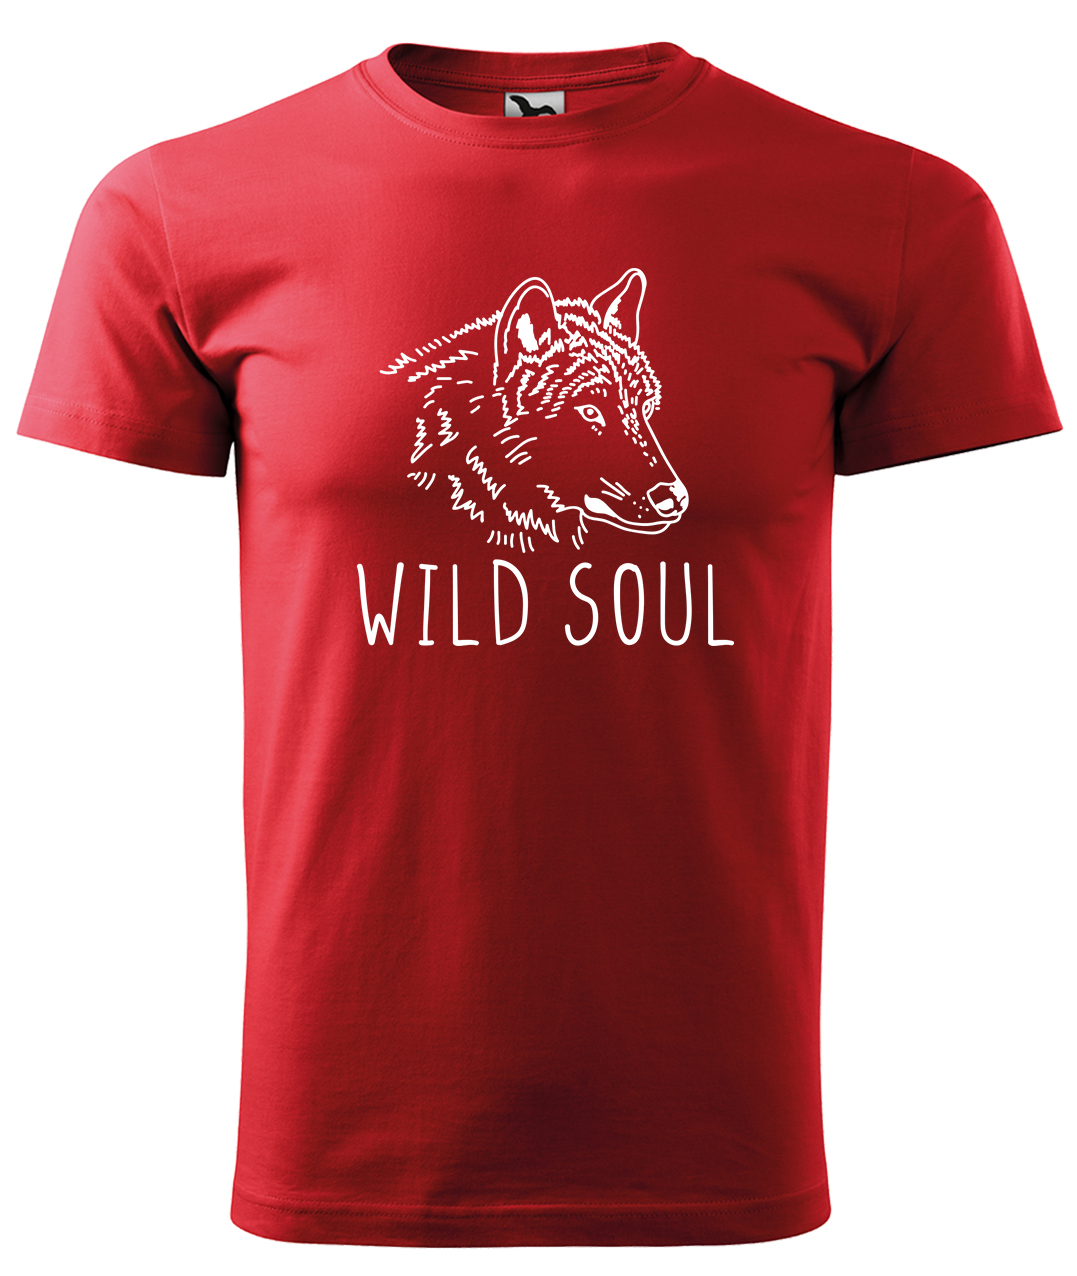 Dětské tričko s vlkem - Wild soul Velikost: 4 roky / 110 cm, Barva: Červená (07), Délka rukávu: Krátký rukáv